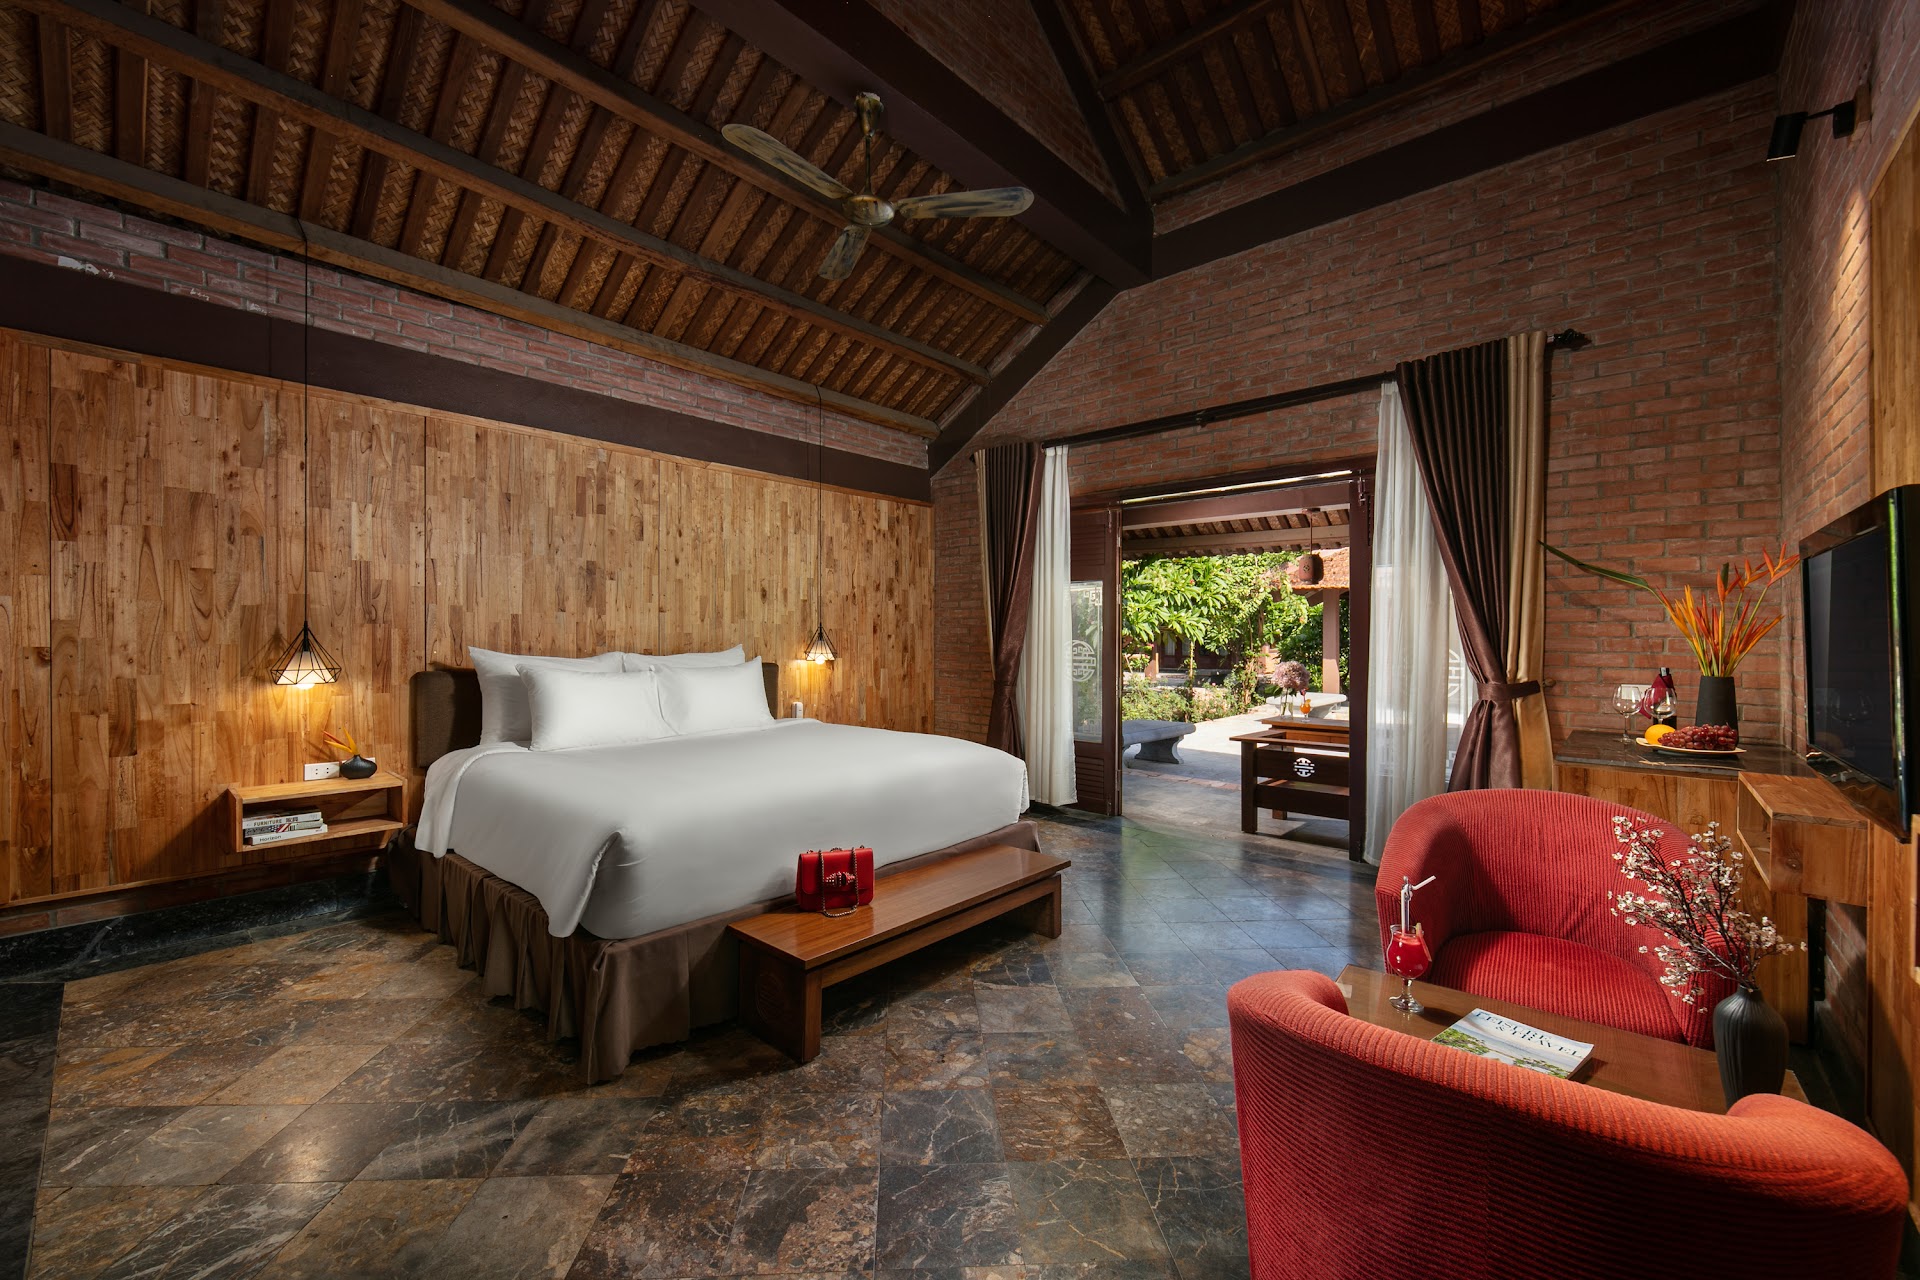 Asean Resort & Spa: khu nghỉ dưỡng bình yên nơi núi rừng